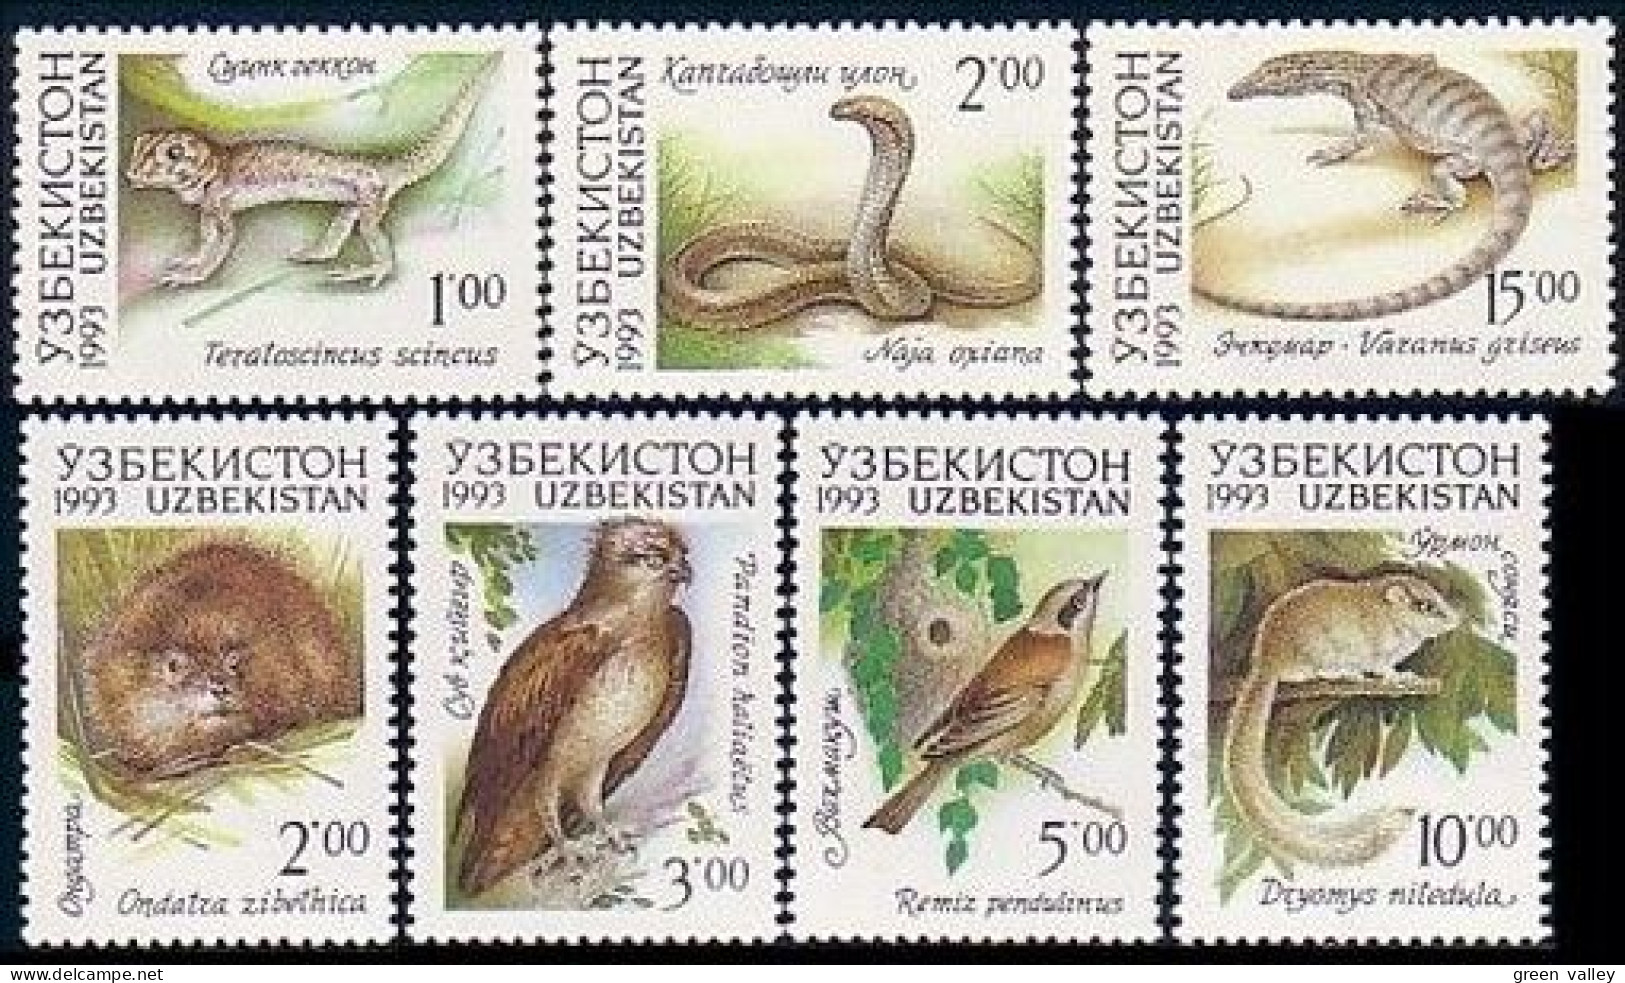 918 Uzbekistan Oiseaux Birds Reptiles Snakes Lezards Lizzards MNH ** Neuf SC (UZB-2a) - Ouzbékistan